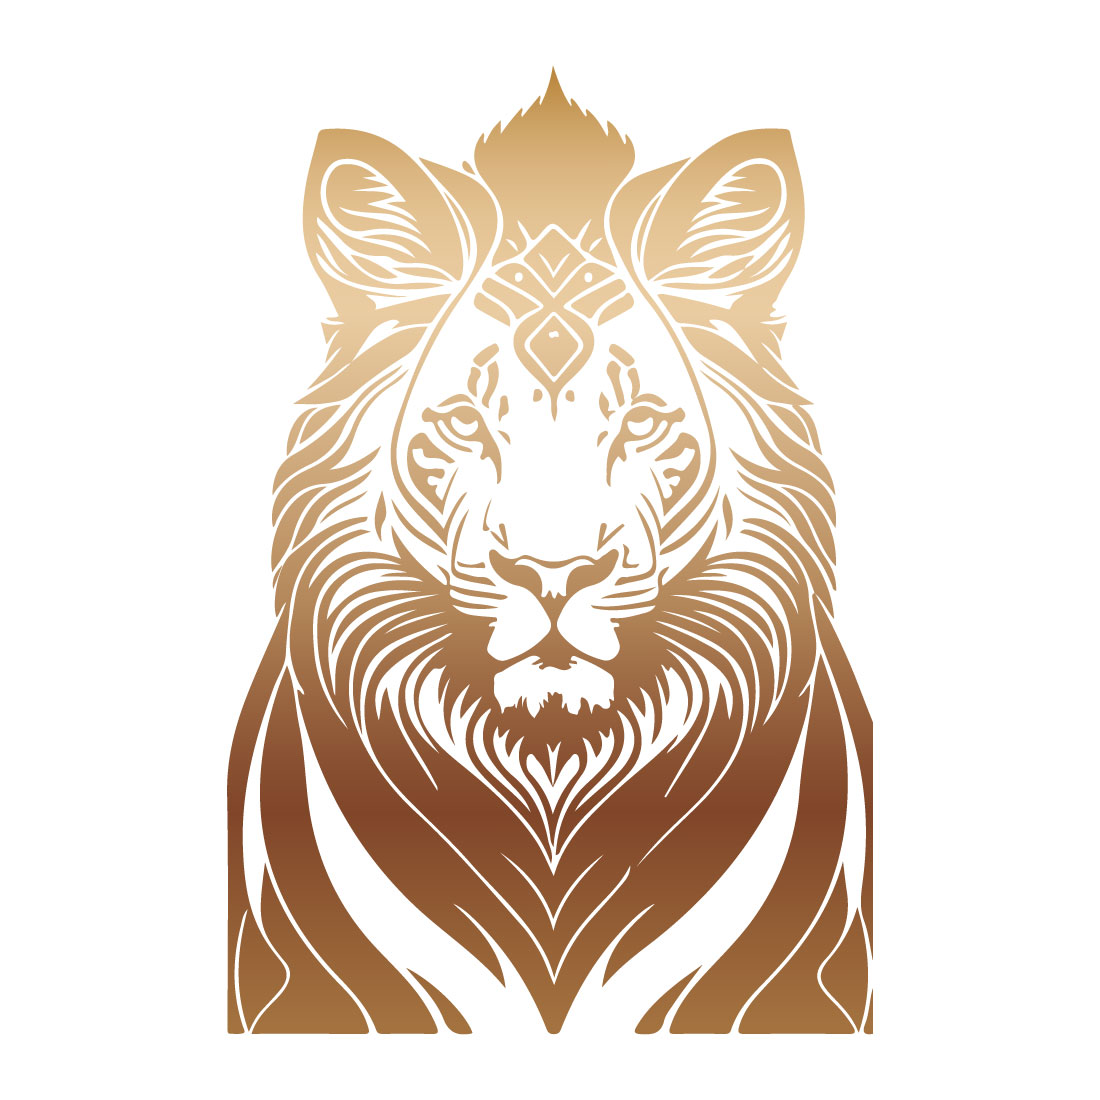 5 Lion Faces Editable Vector Illustration Bundle Set preview image.